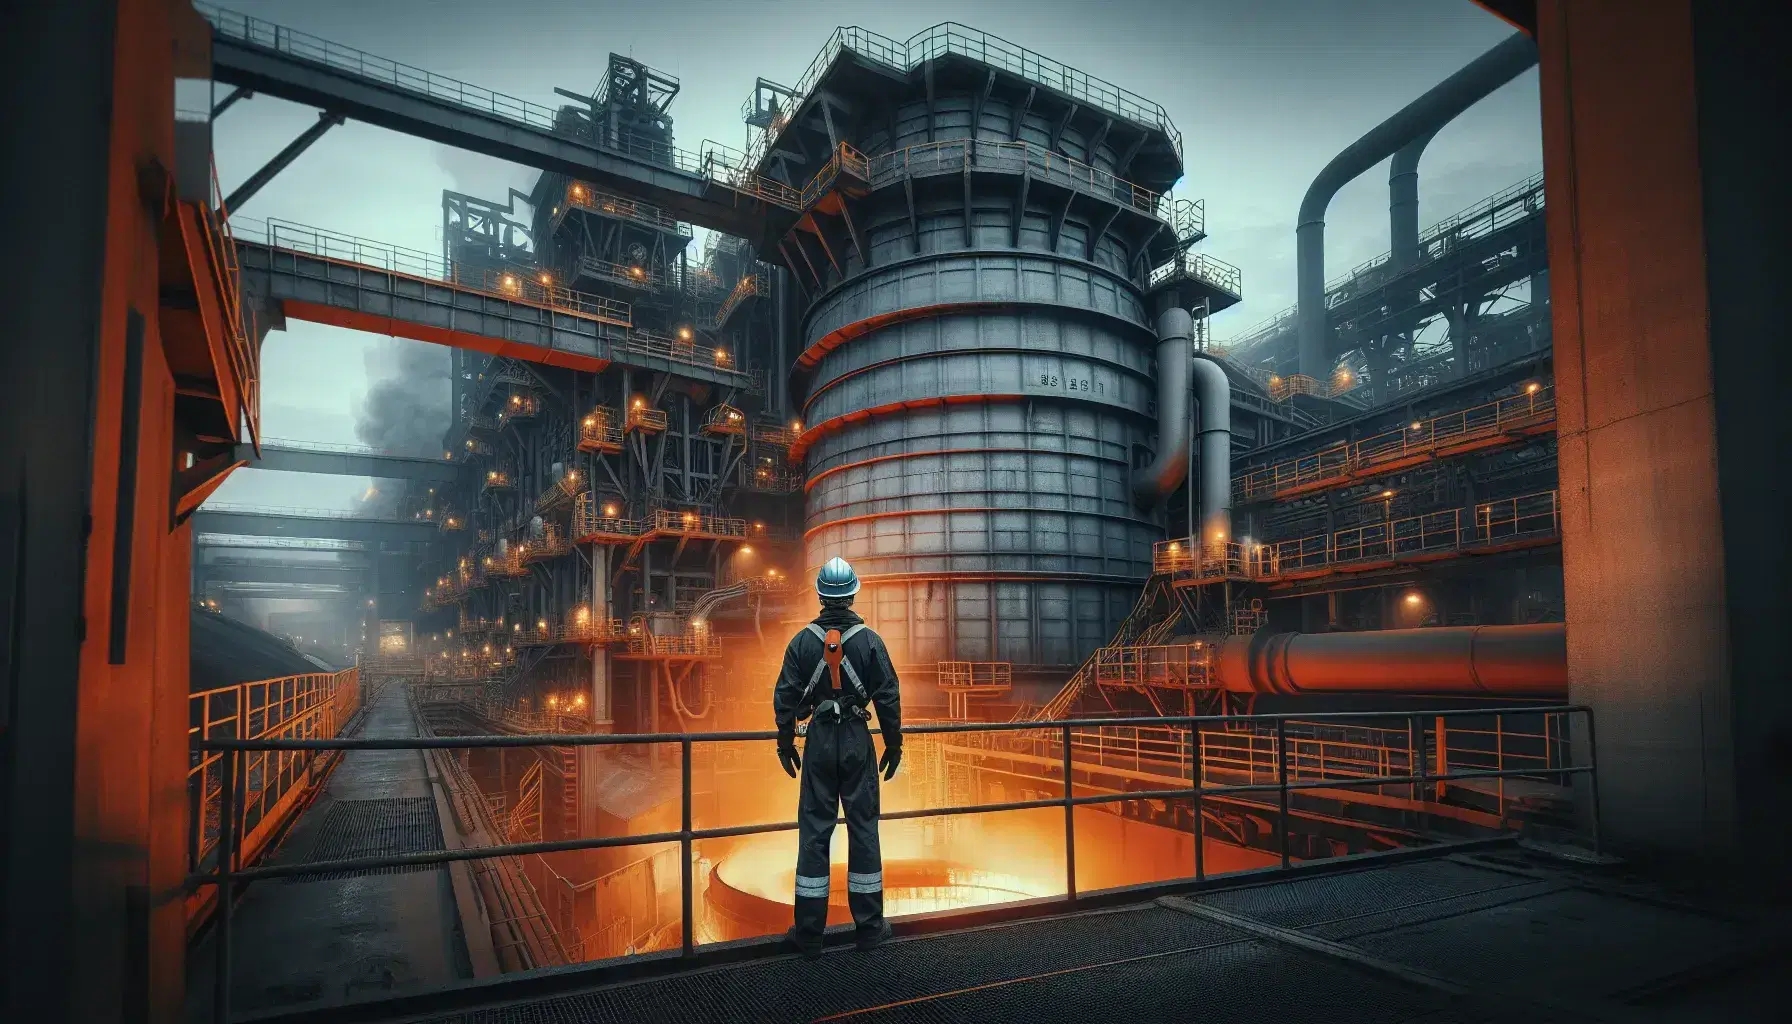 Trabajador con equipo de protección supervisa horno de fundición en industria siderúrgica, con estructuras metálicas y luminiscencia naranja de metal fundido.